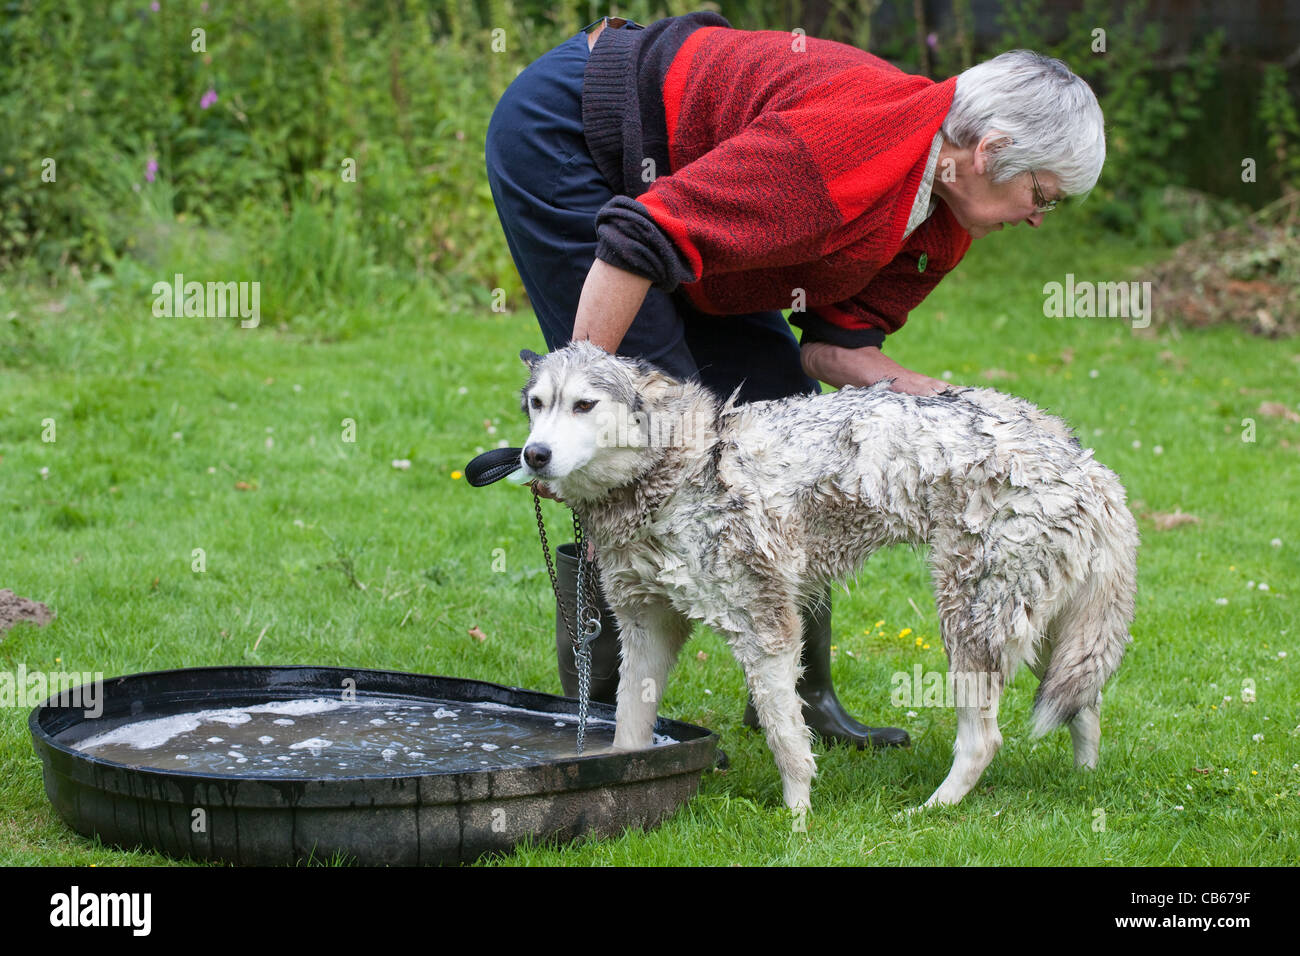 Husky Canis Lupus Familiaris während Fell waschen, genaue Prüfung für externe Parasiten; Hirsche, Schafe Zecken Ixodes sp. Stockfoto